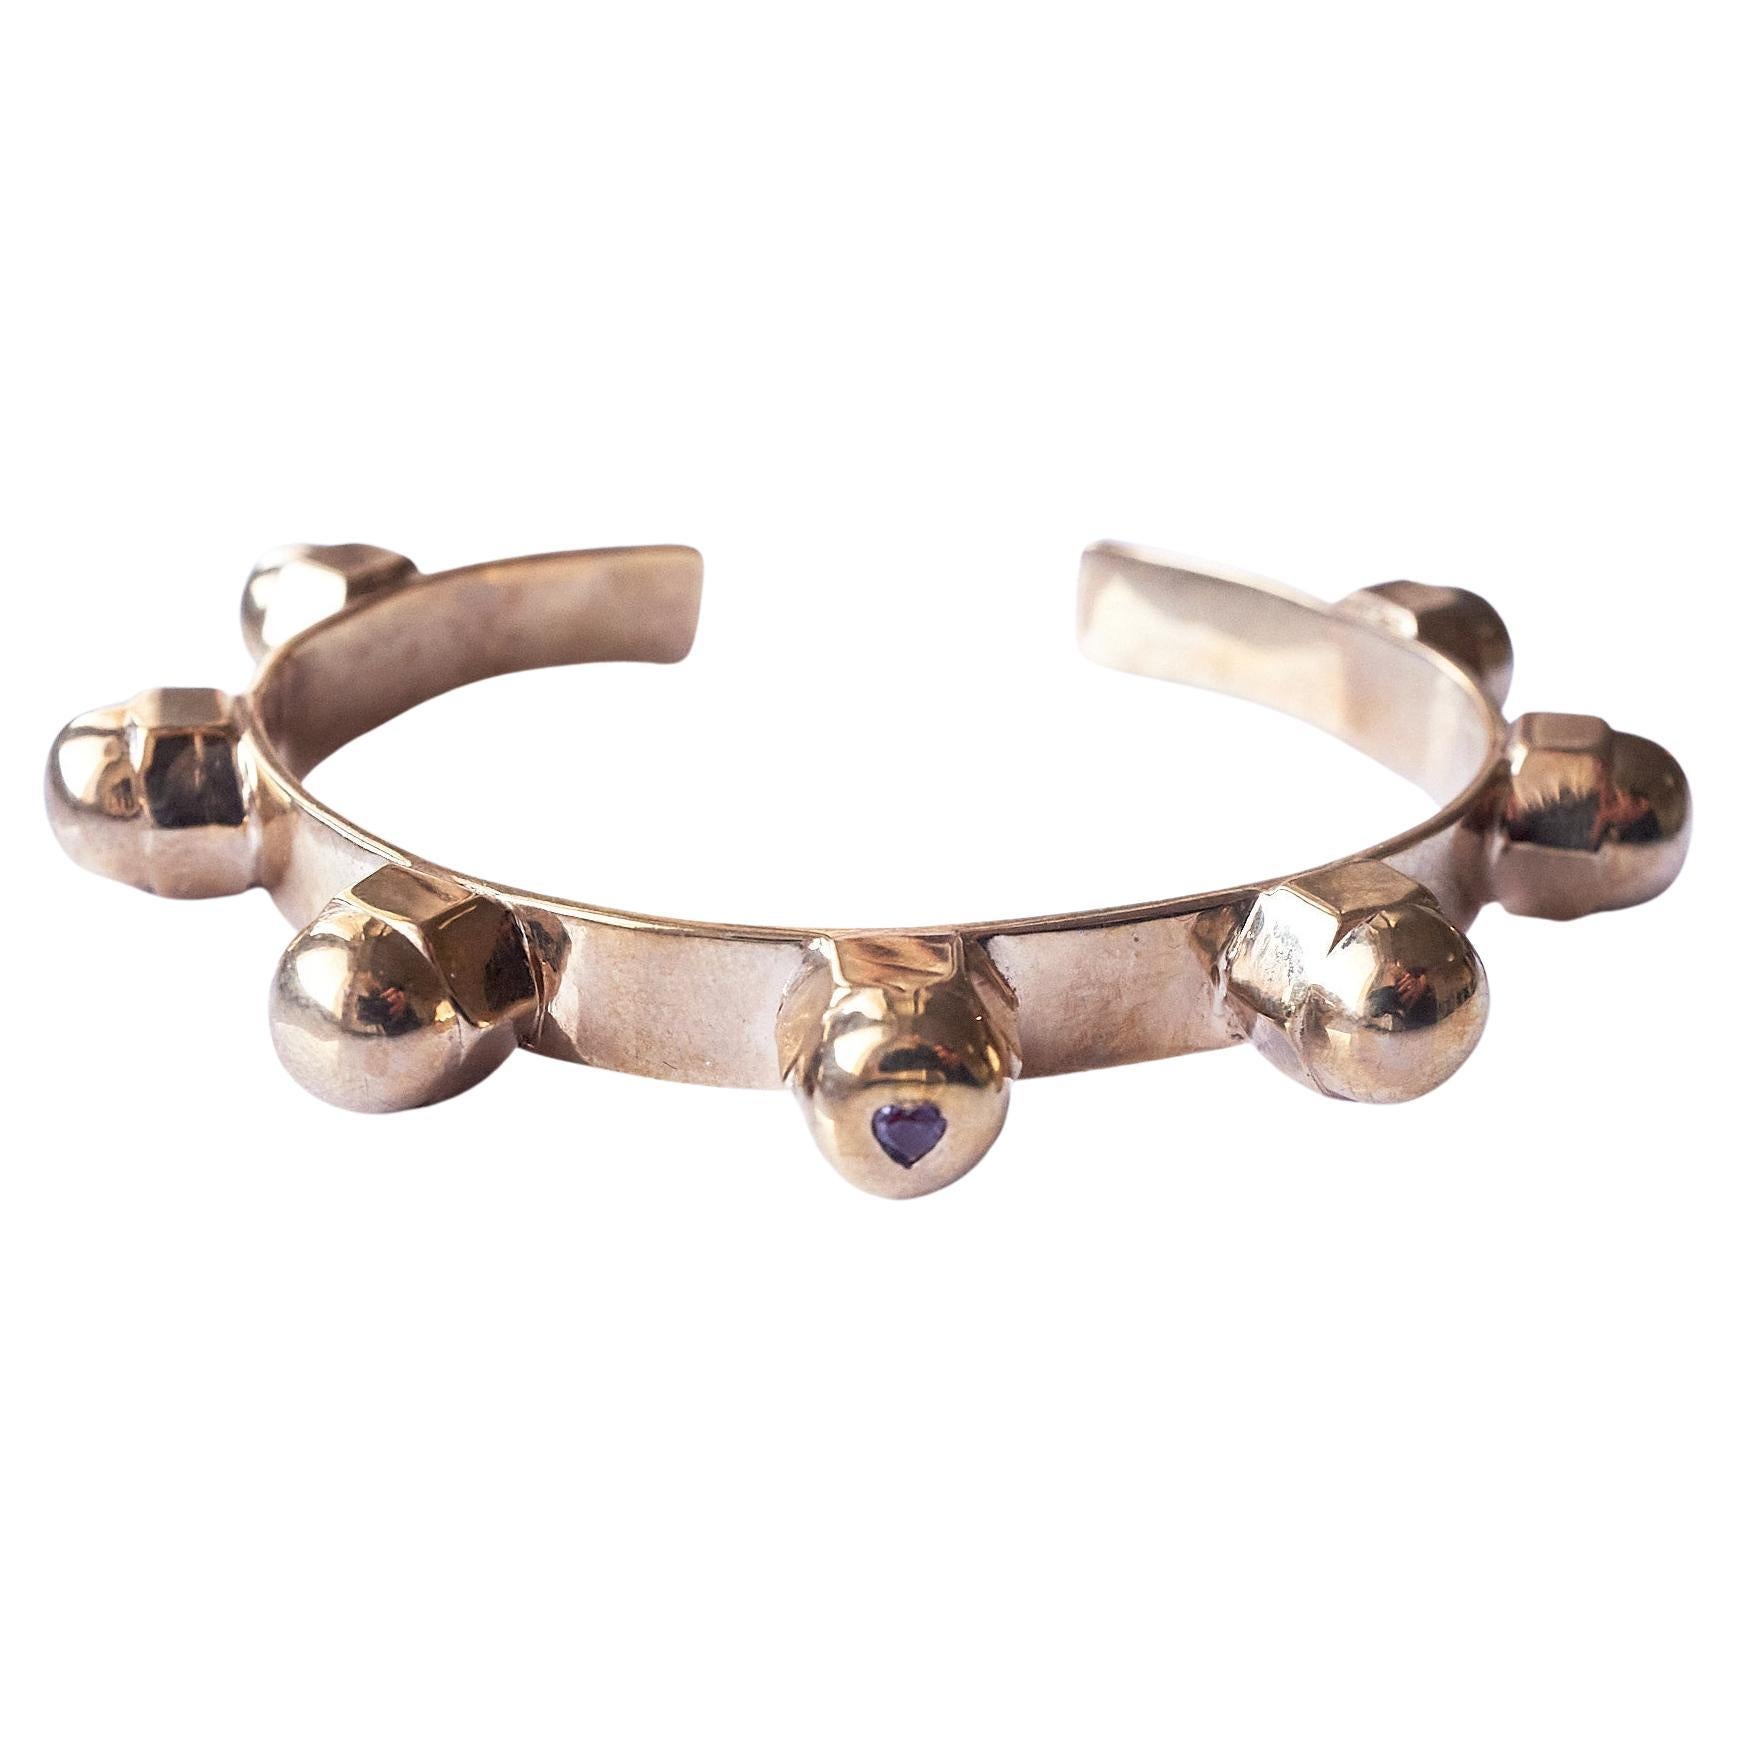 Coeur d'Alexandrite  Bracelet bracelet manchette clous de bronze J DAUPHIN

J DAUPHIN bracelet à clous en bronze

Fabriqué à la main à Los Angeles

Disponible pour une livraison immédiate
